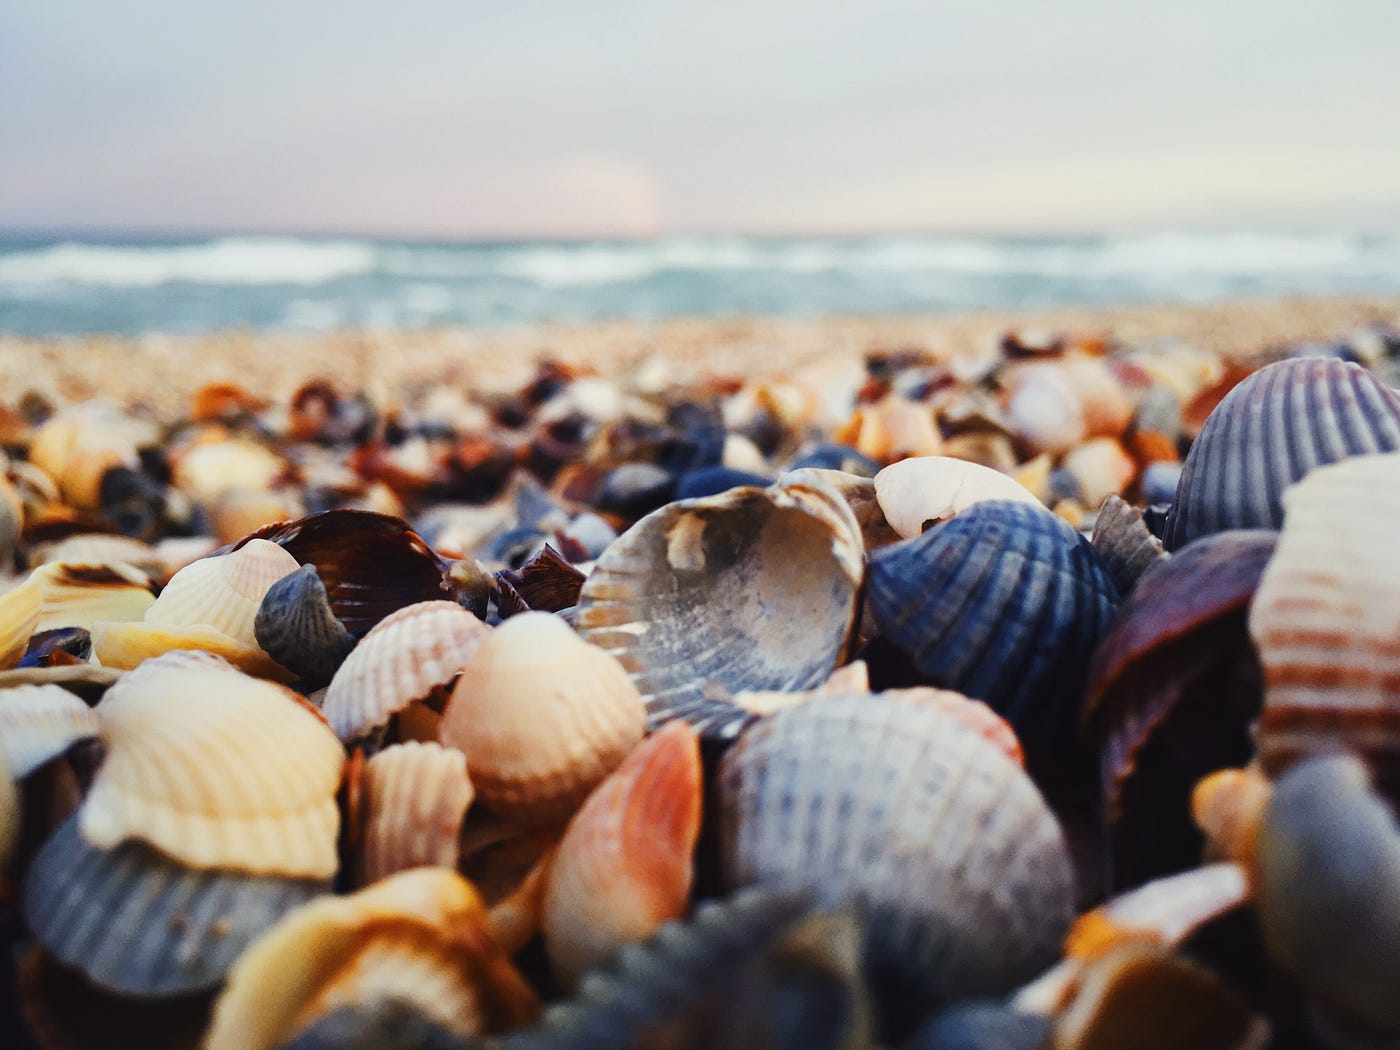 Seashells money grows on beachs